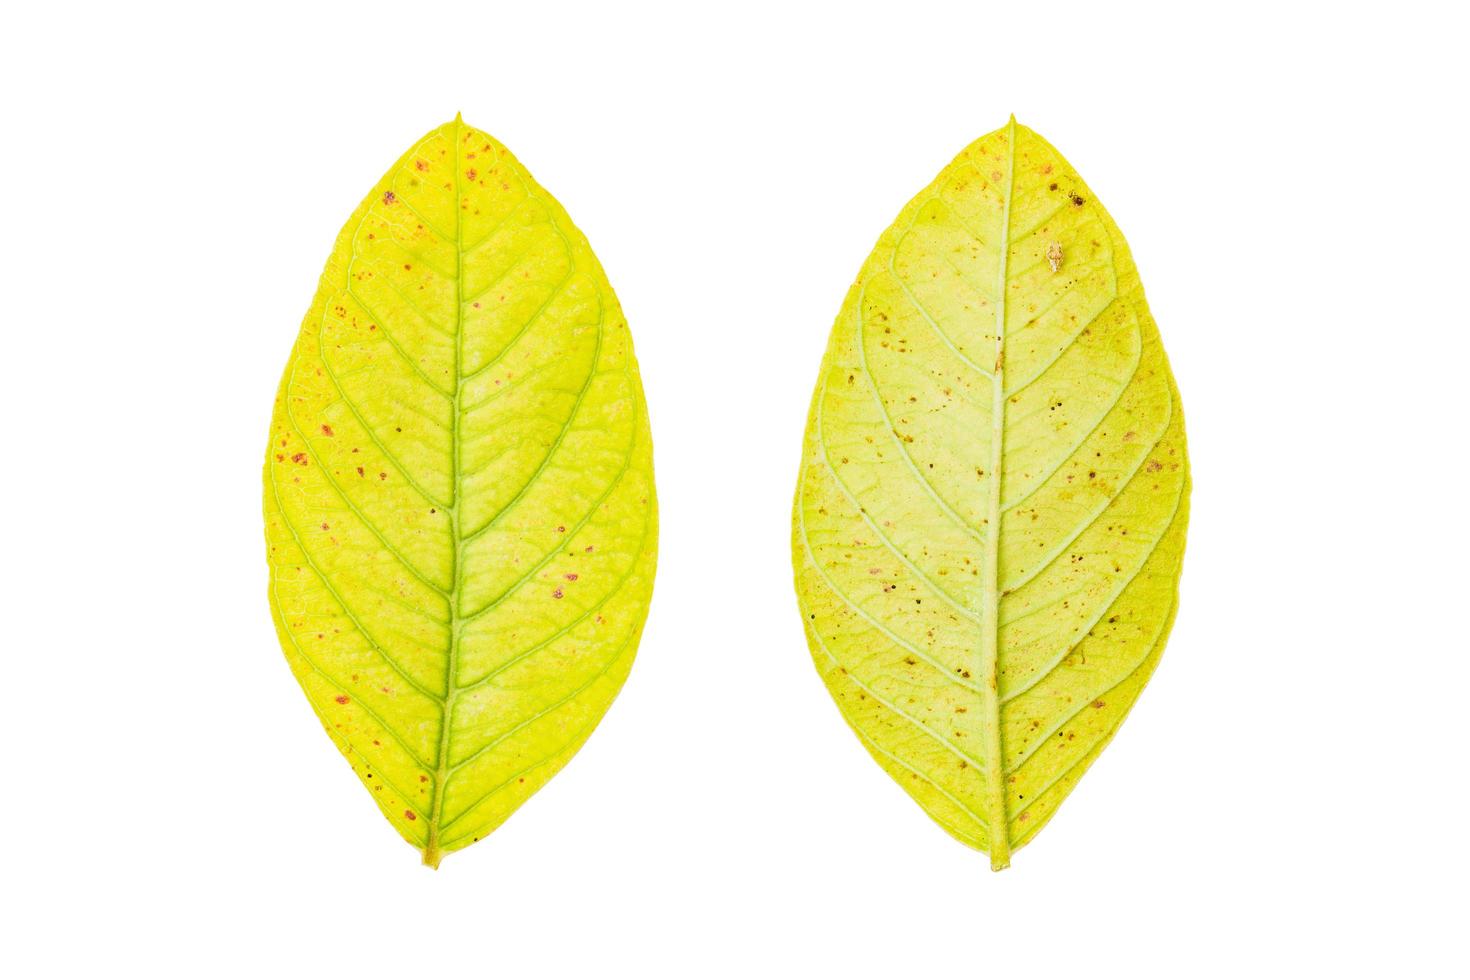 gult blad isolerad på en vit bakgrund foto